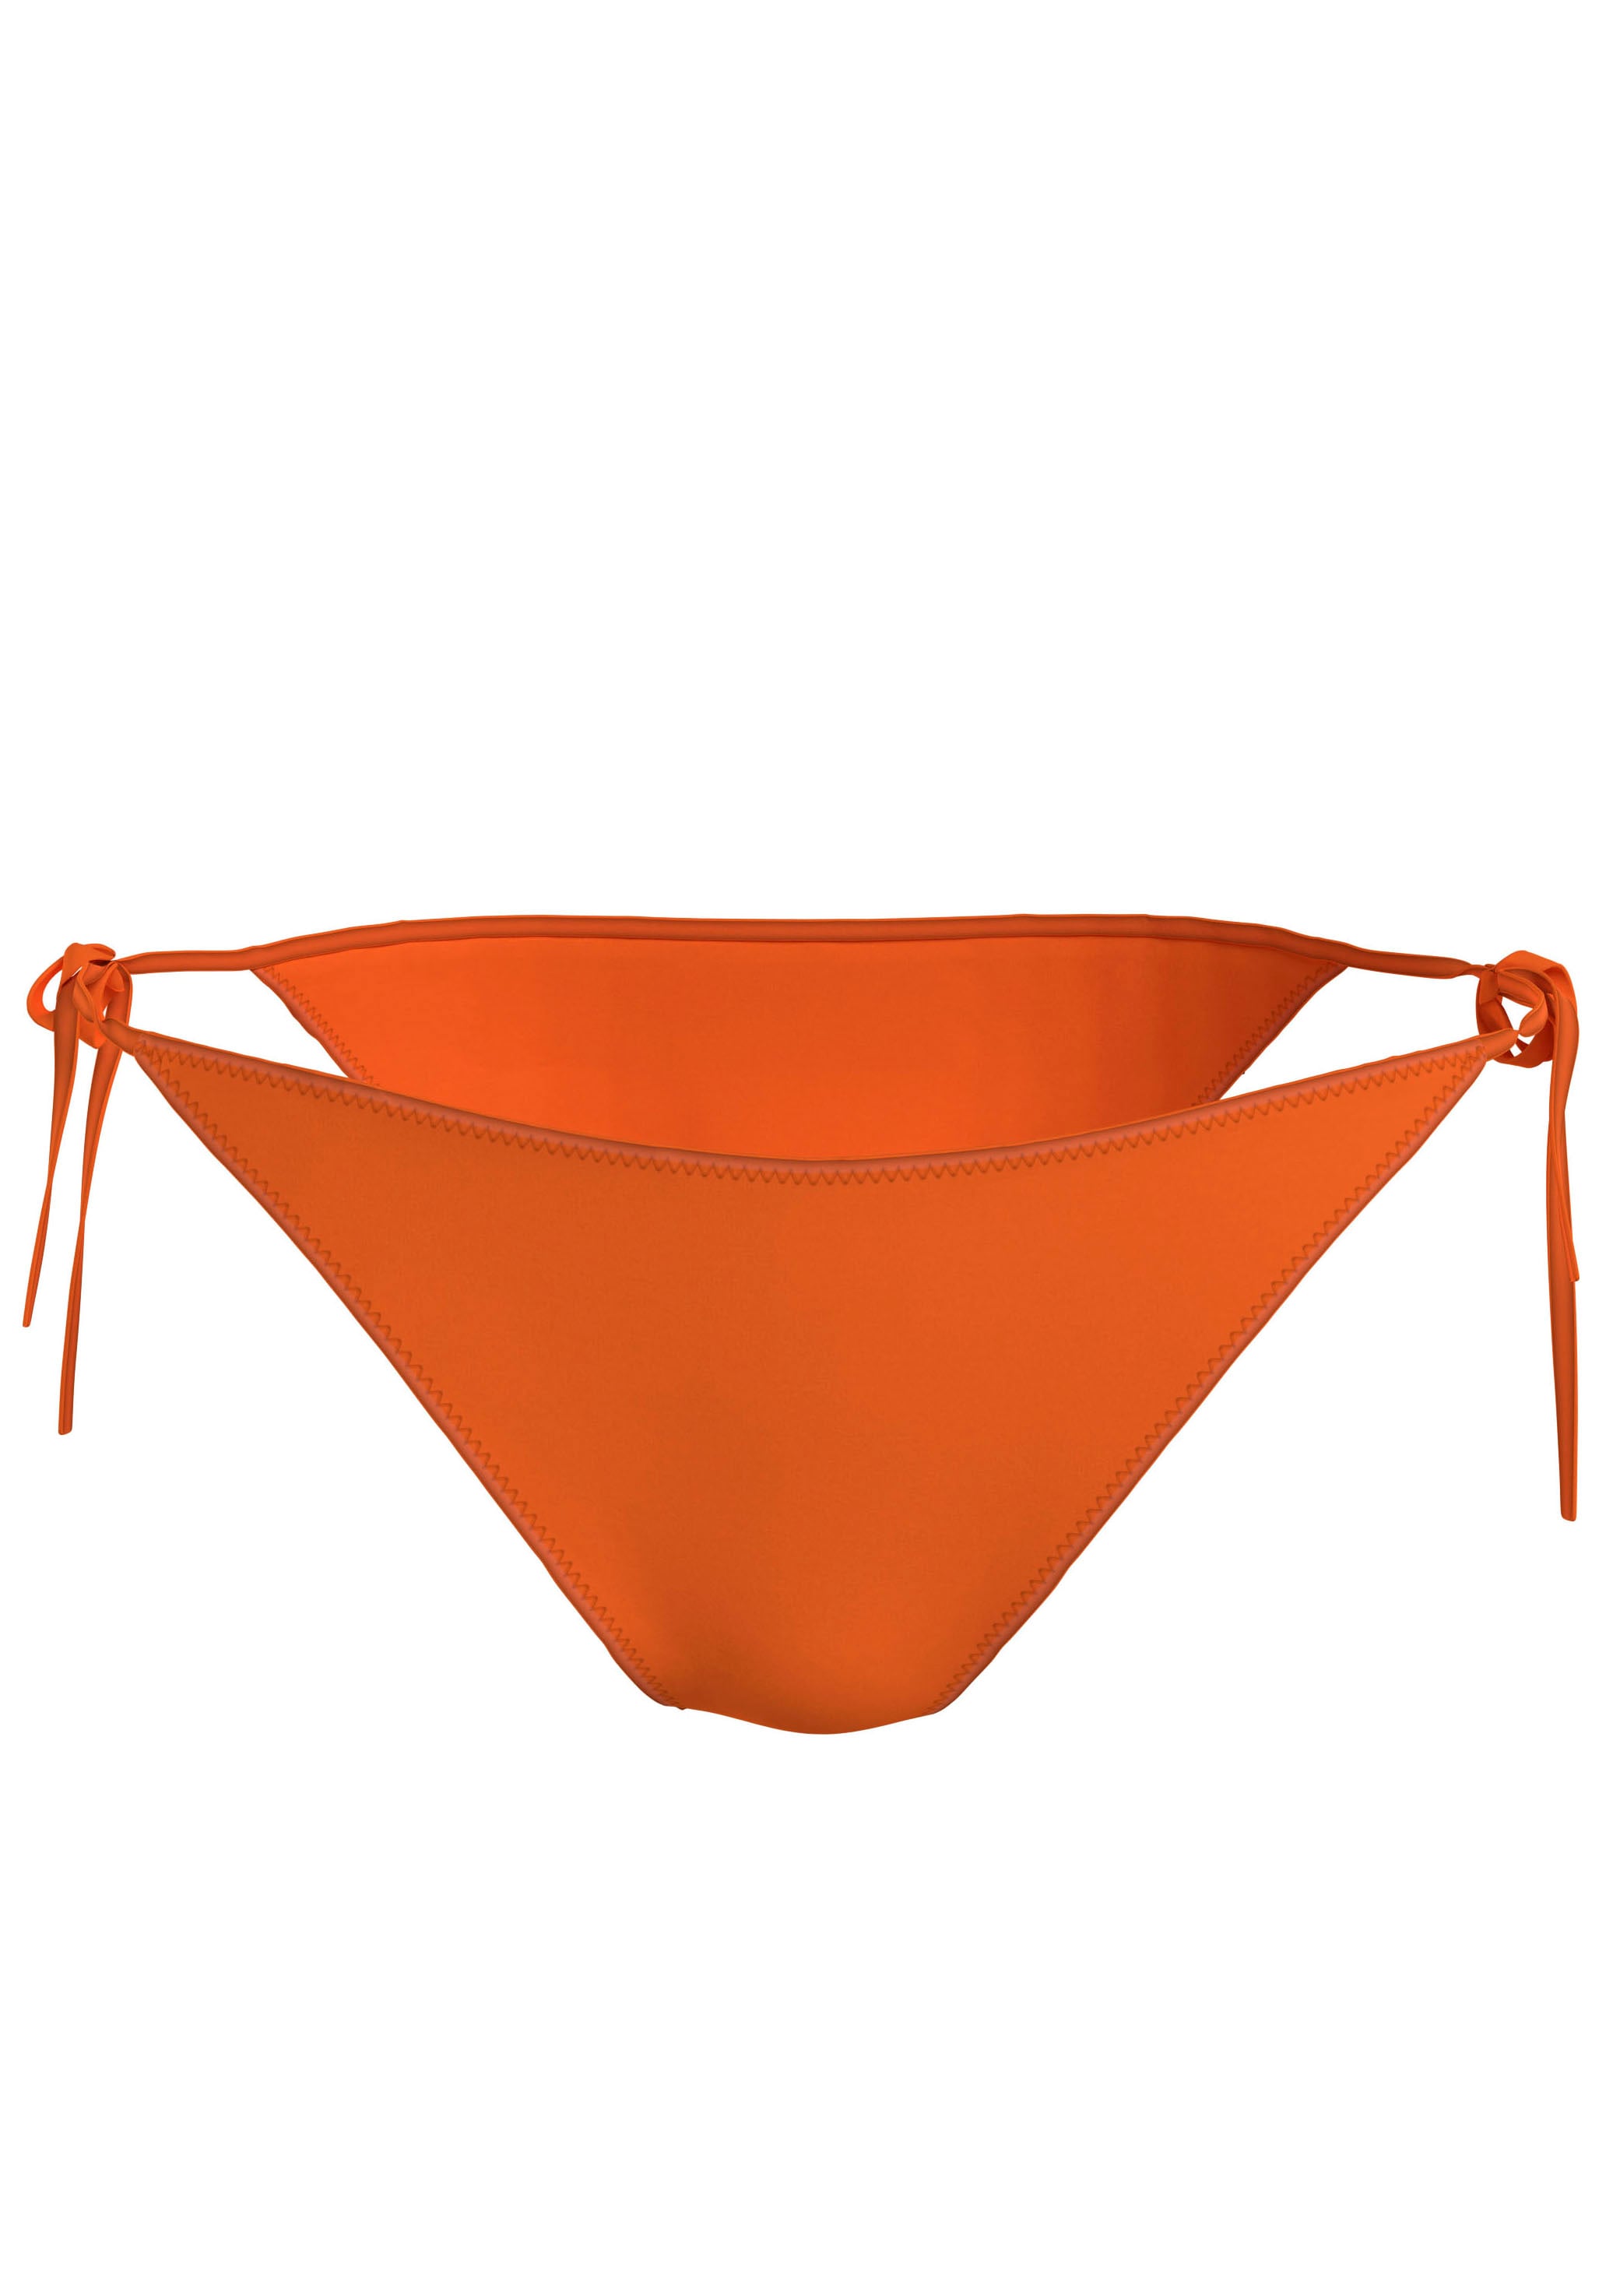 Bikini orange online einkaufen OTTO unkompliziert - bei ganz